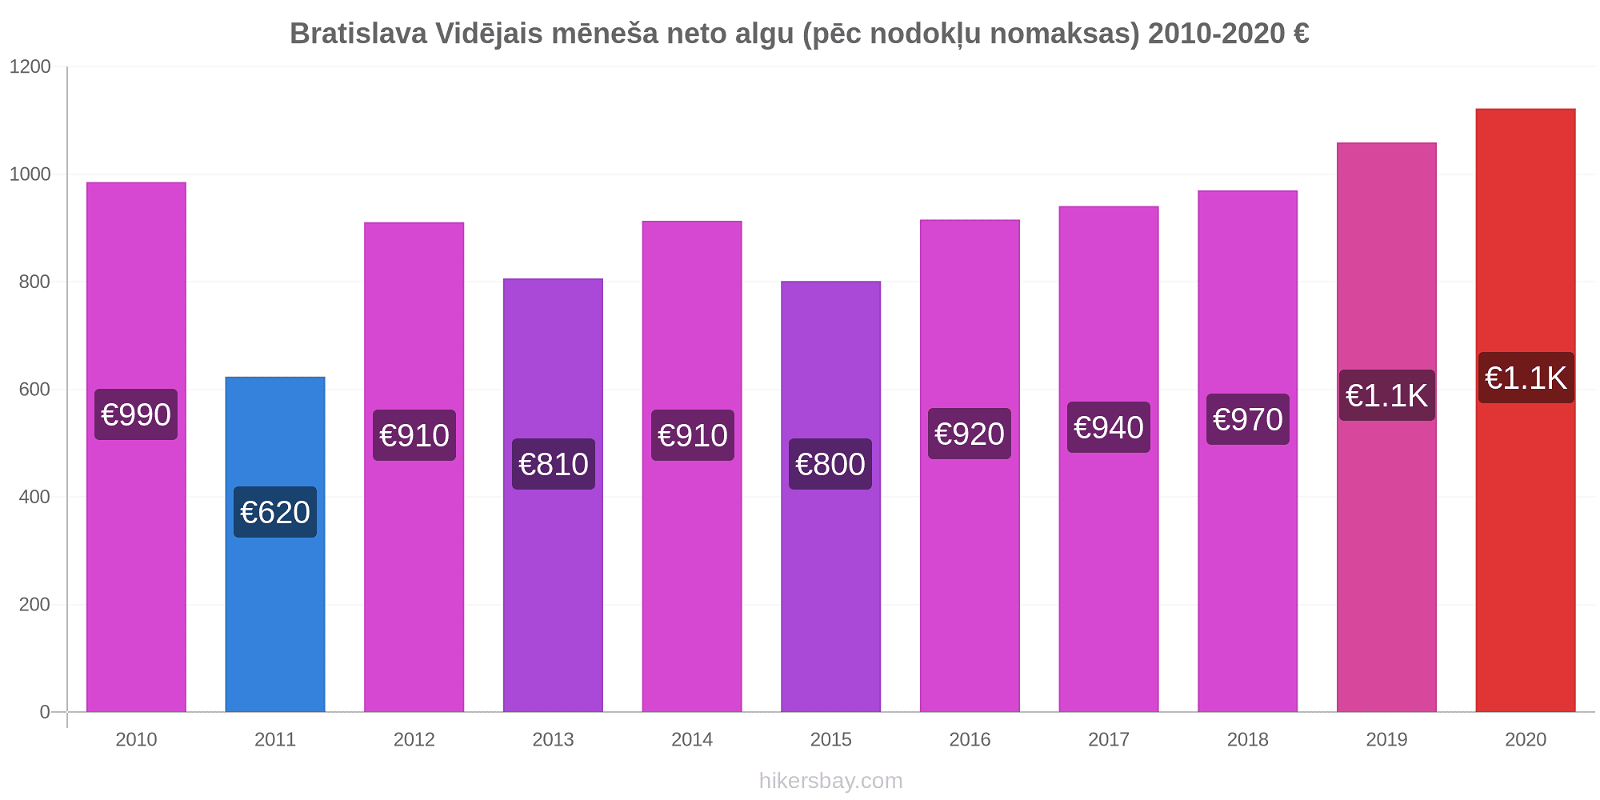 Bratislava cenu izmaiņas Vidējais mēneša neto algu (pēc nodokļu nomaksas) hikersbay.com